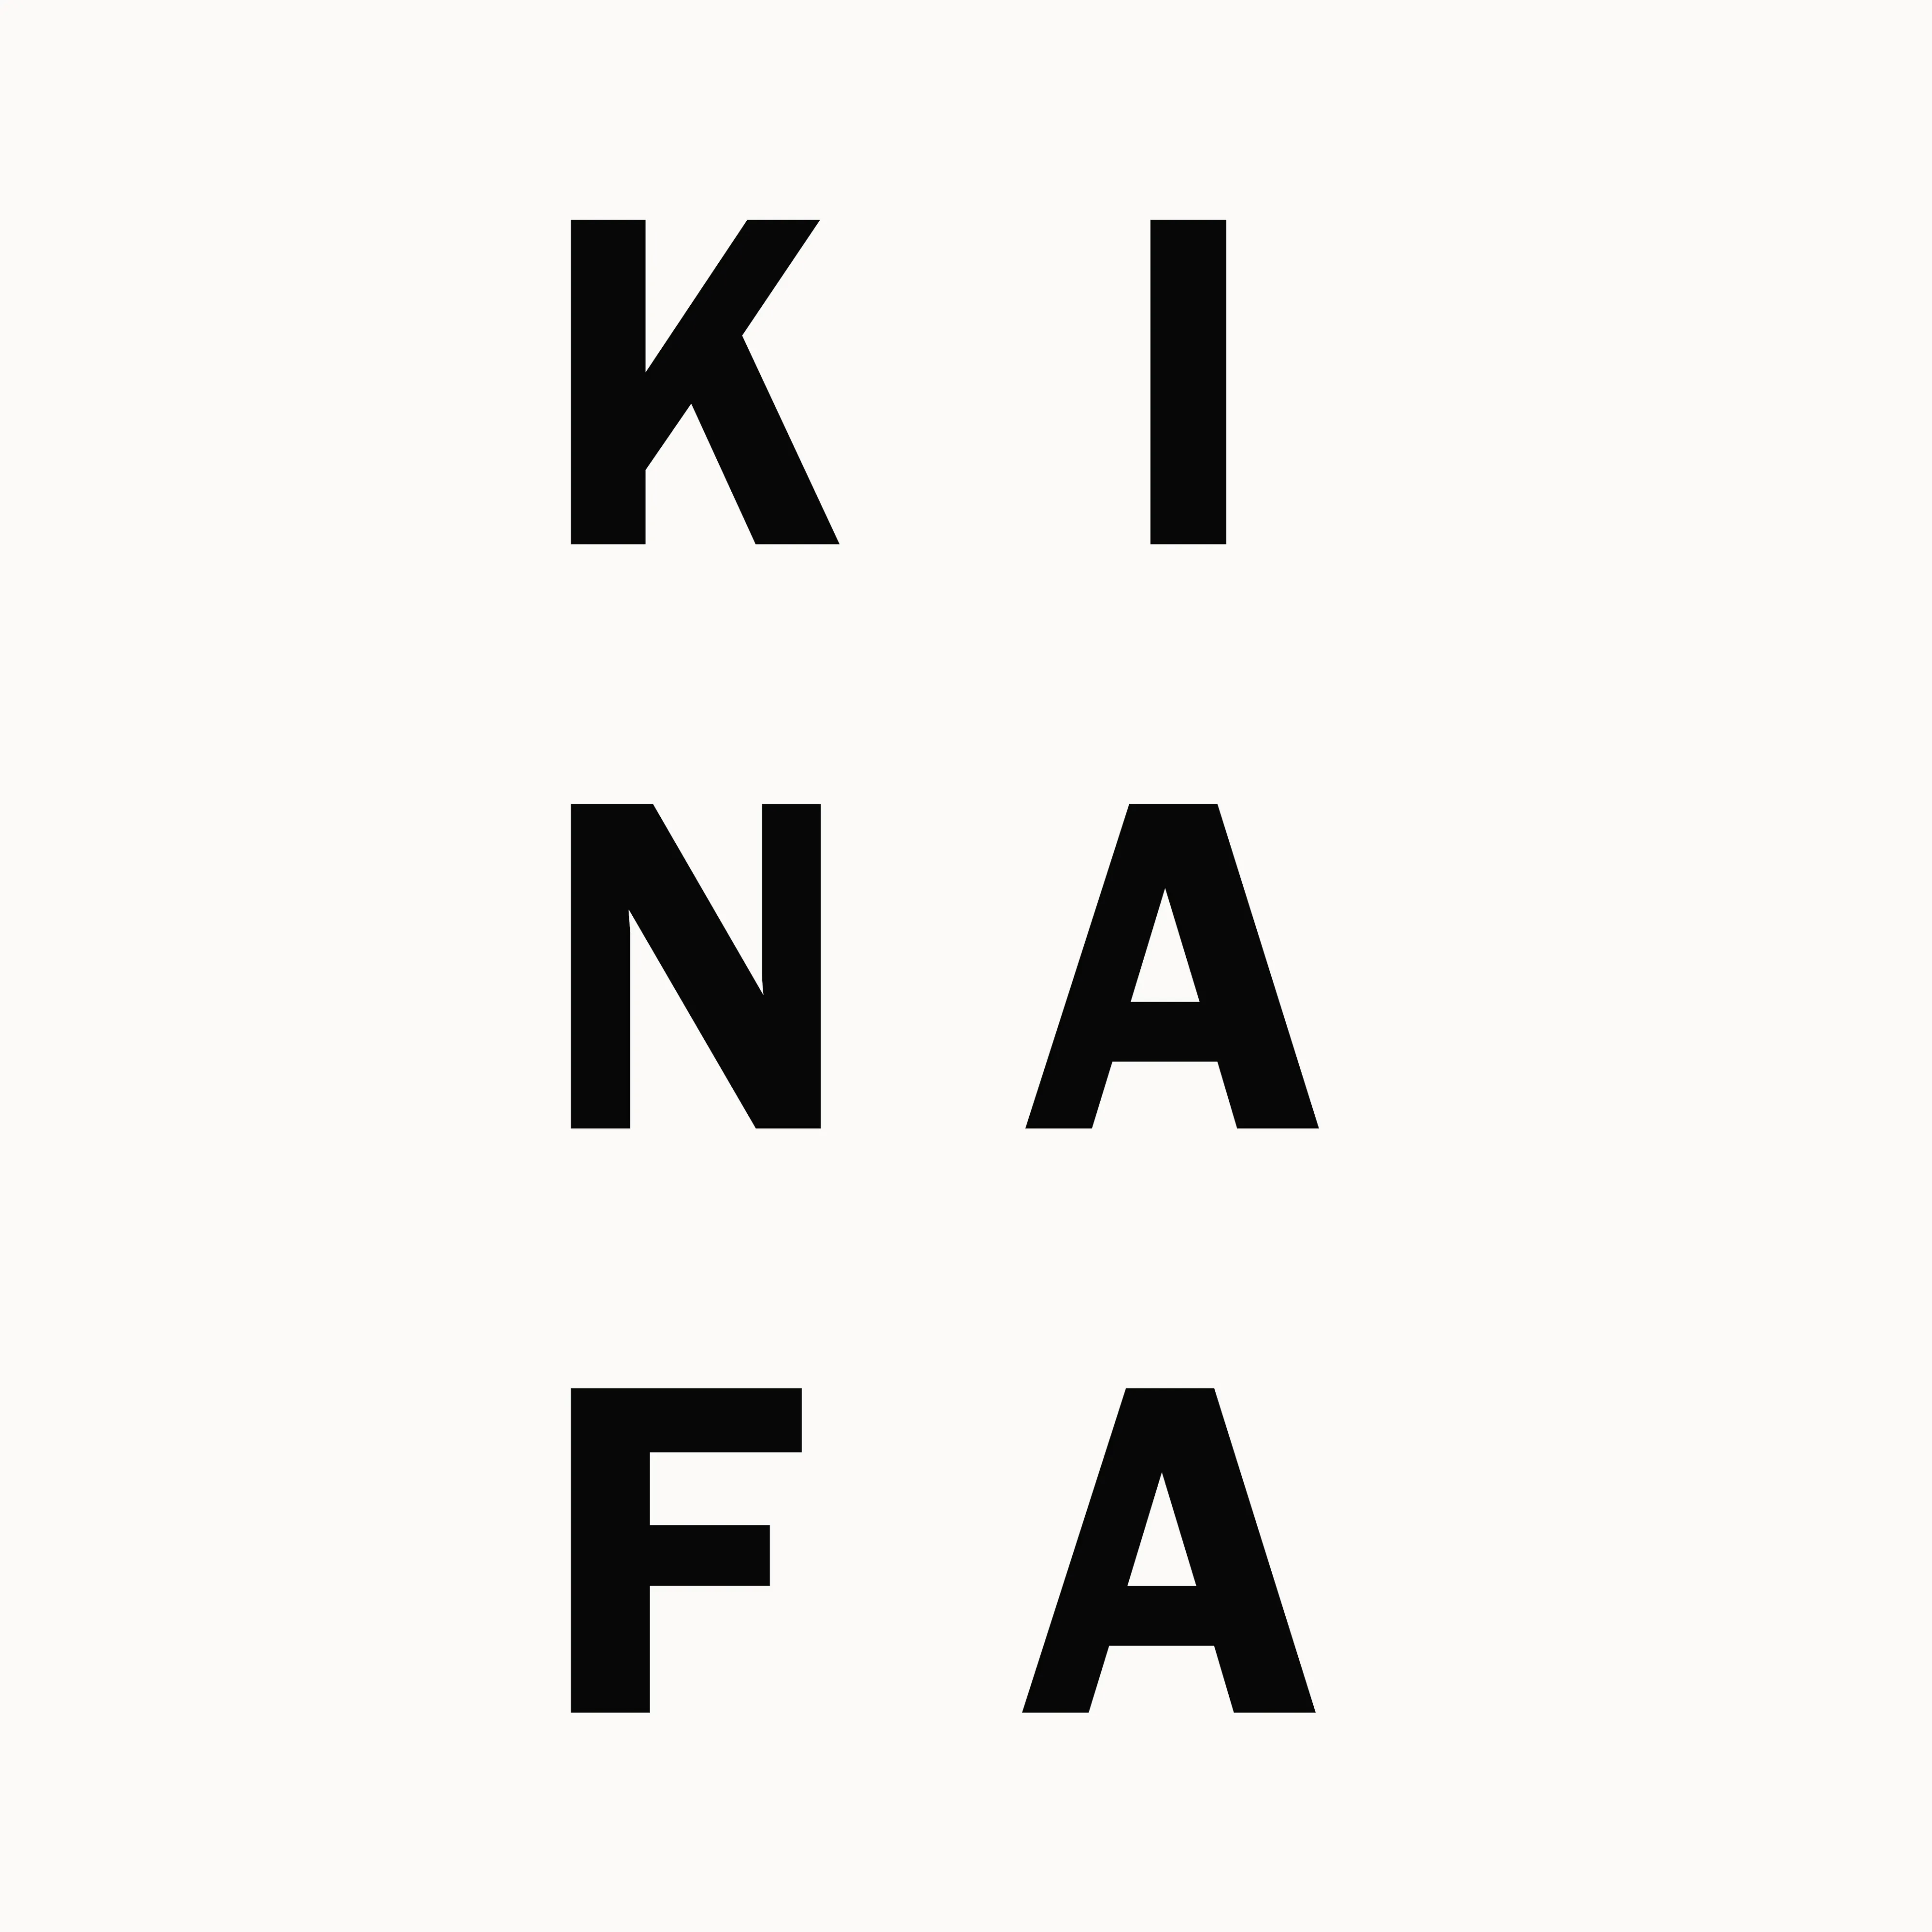 Kinafa